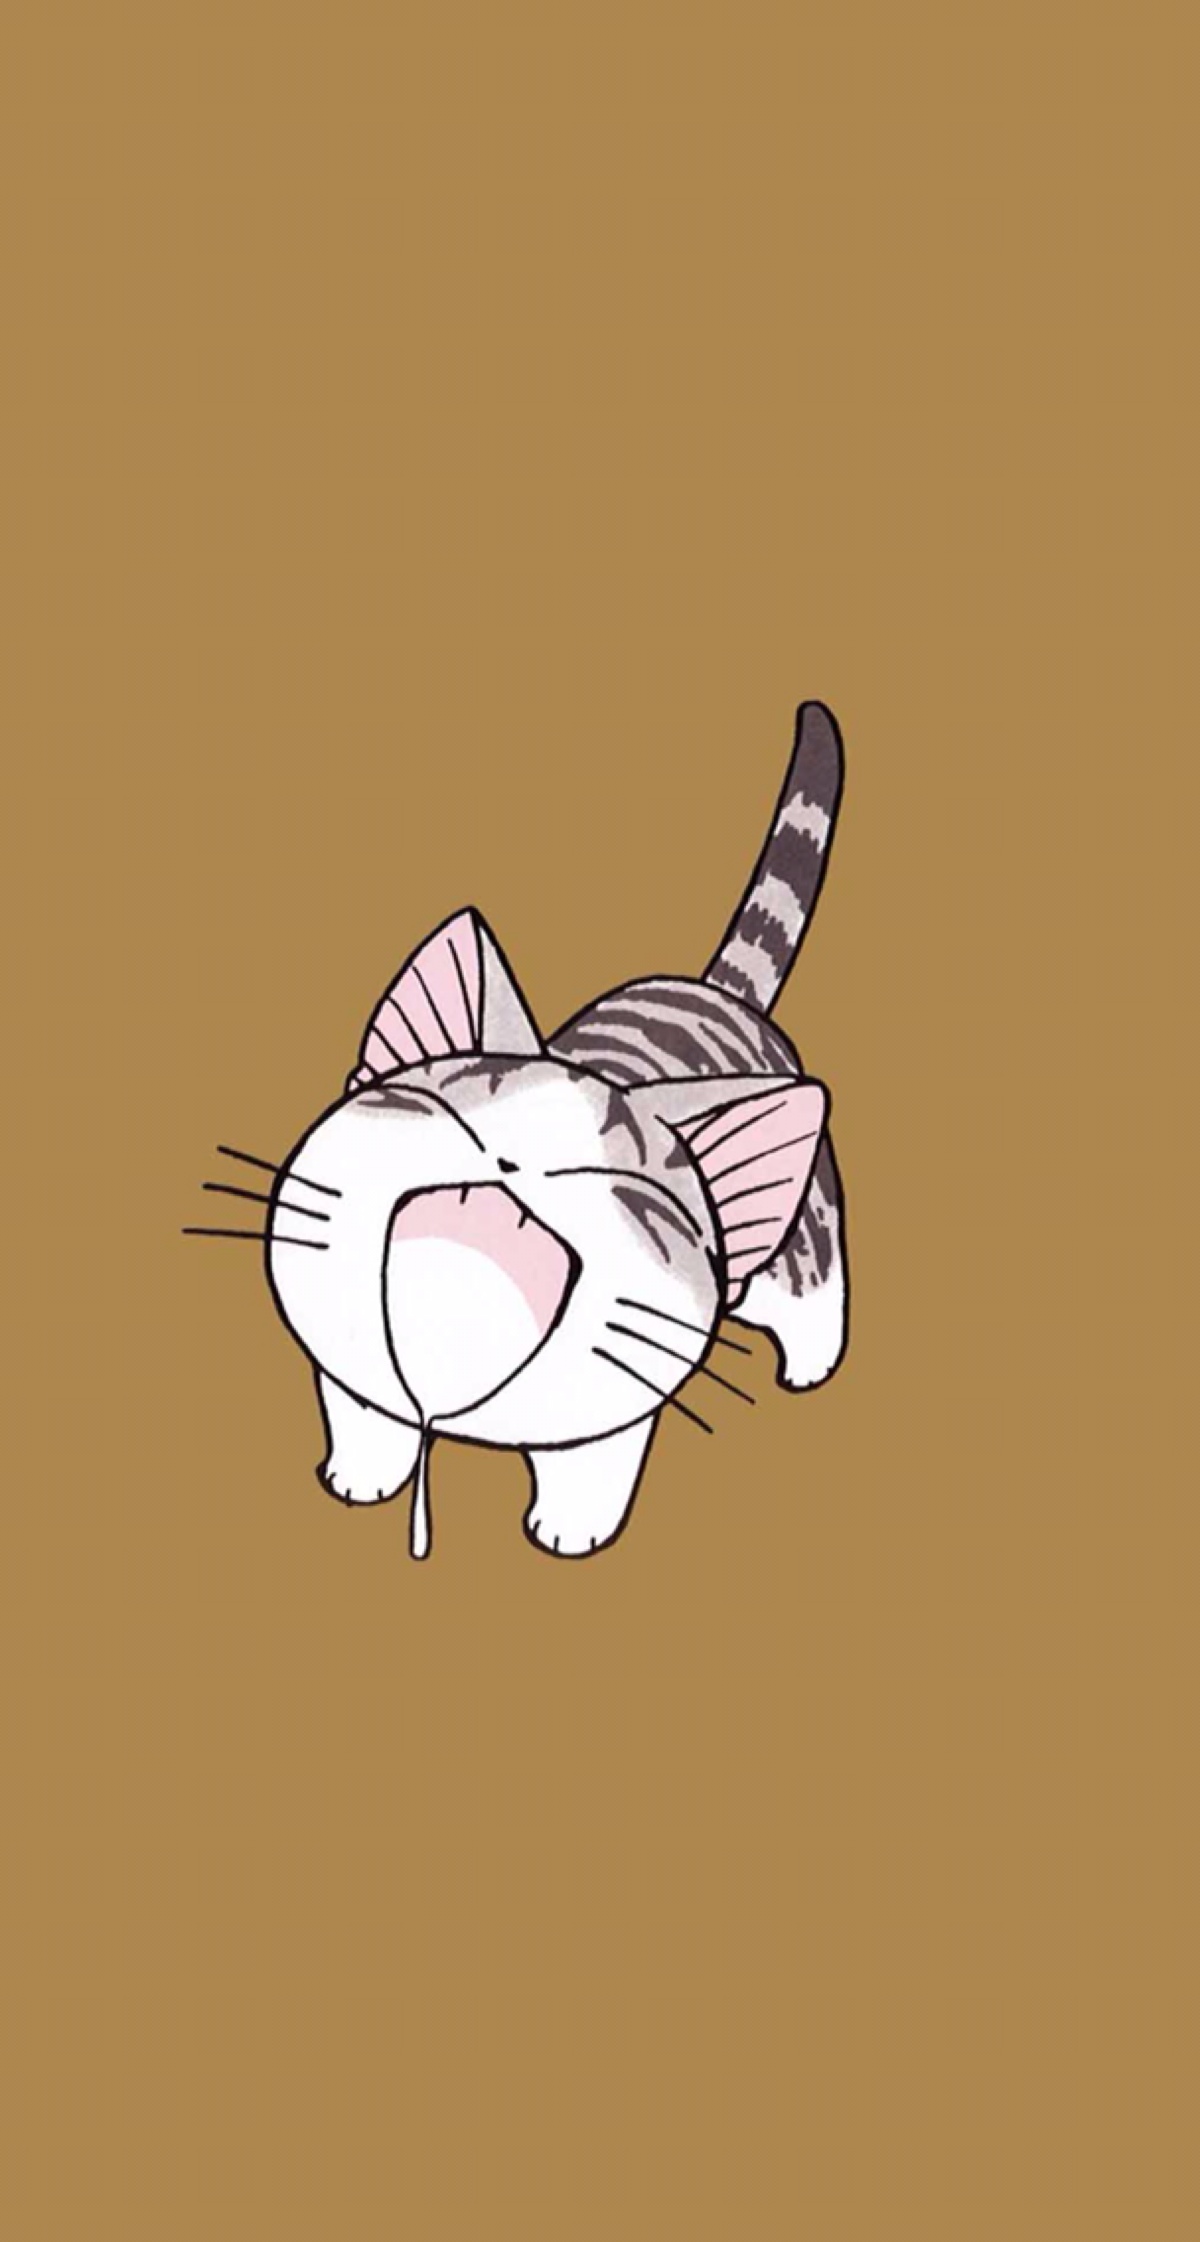 甜甜起司猫,很有爱的一部动画片